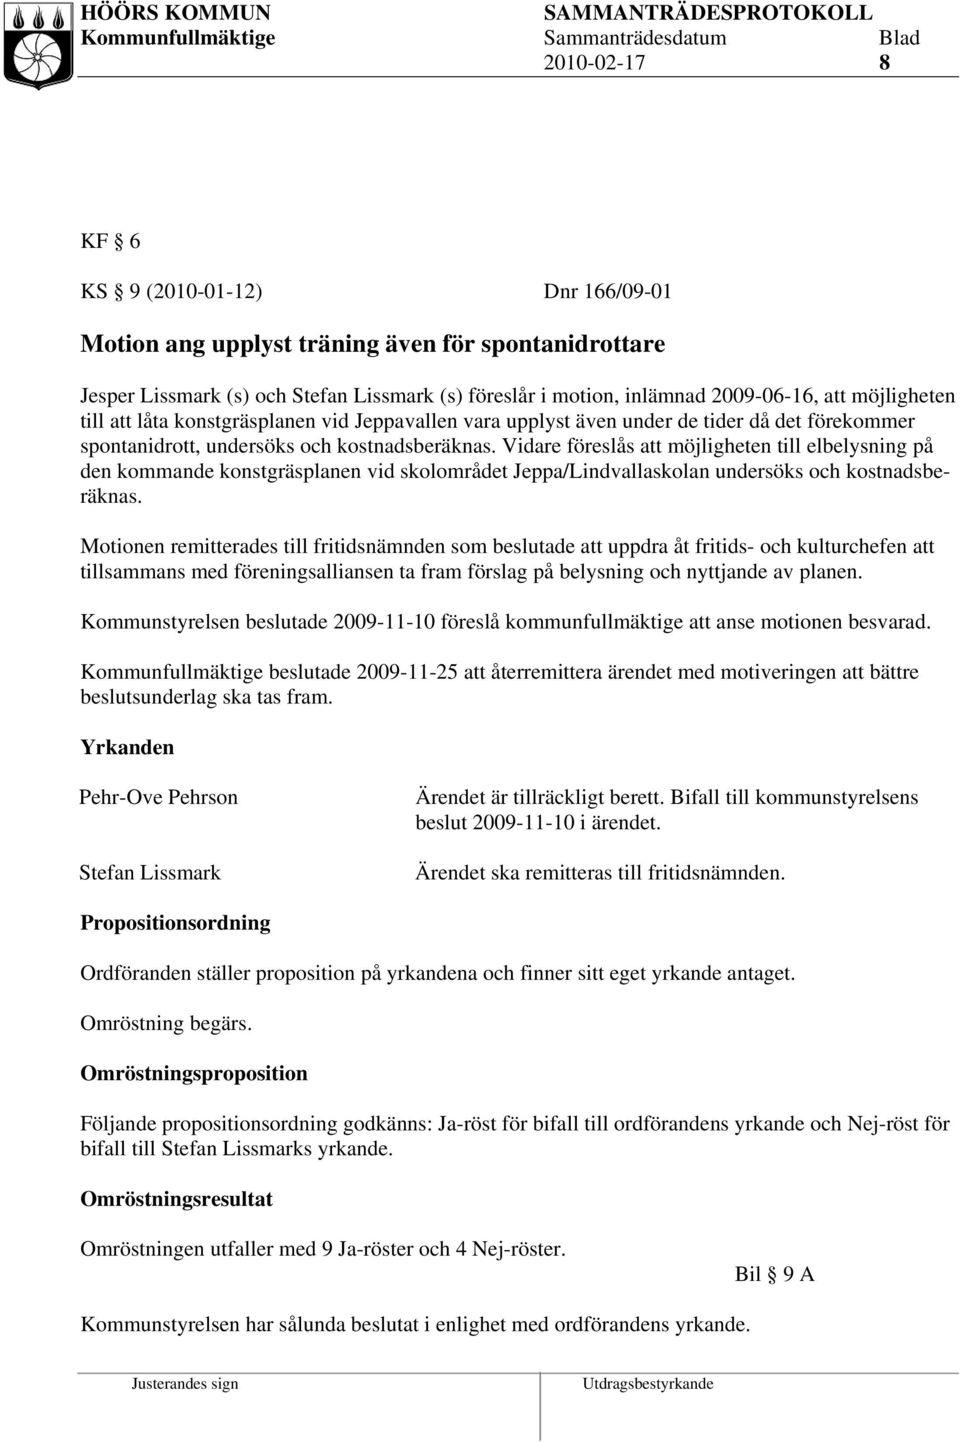 Vidare föreslås möjligheten till elbelysning på den kommande konstgräsplanen vid skolområdet Jeppa/Lindvallaskolan undersöks och kostnadsberäknas.